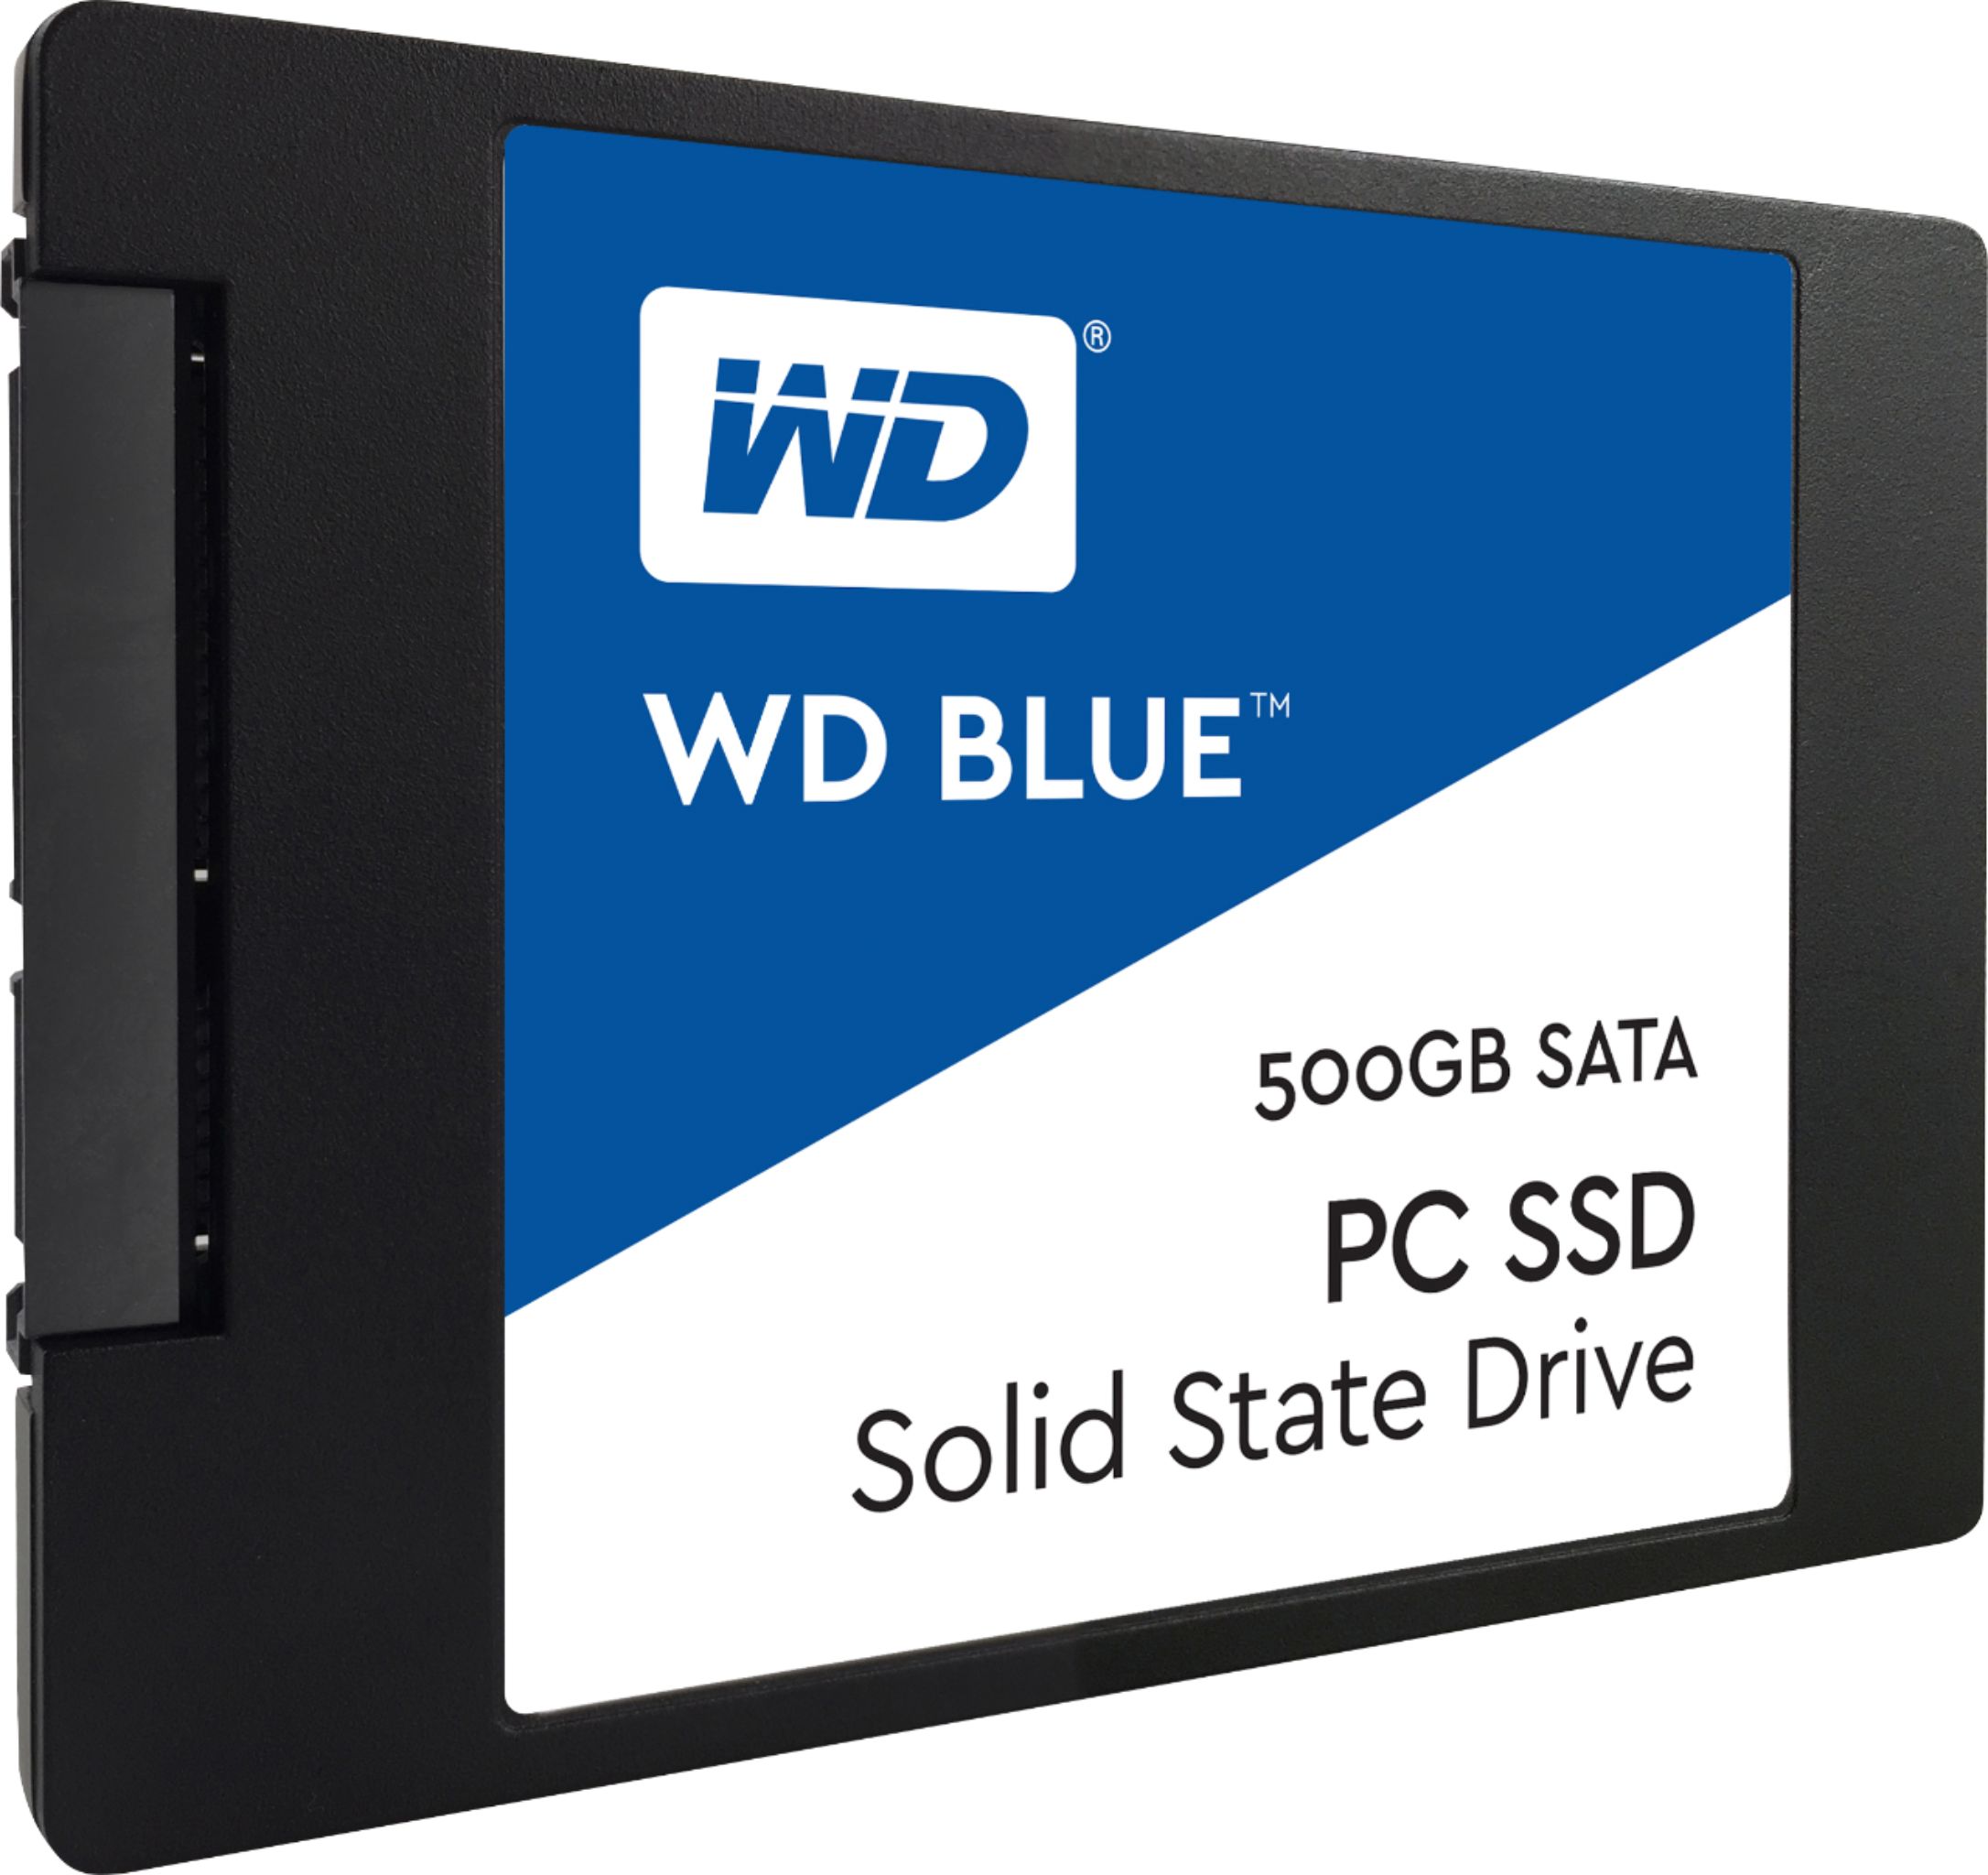 WD - Blue 500GB SATA 2.5" Internal Solid State Drive